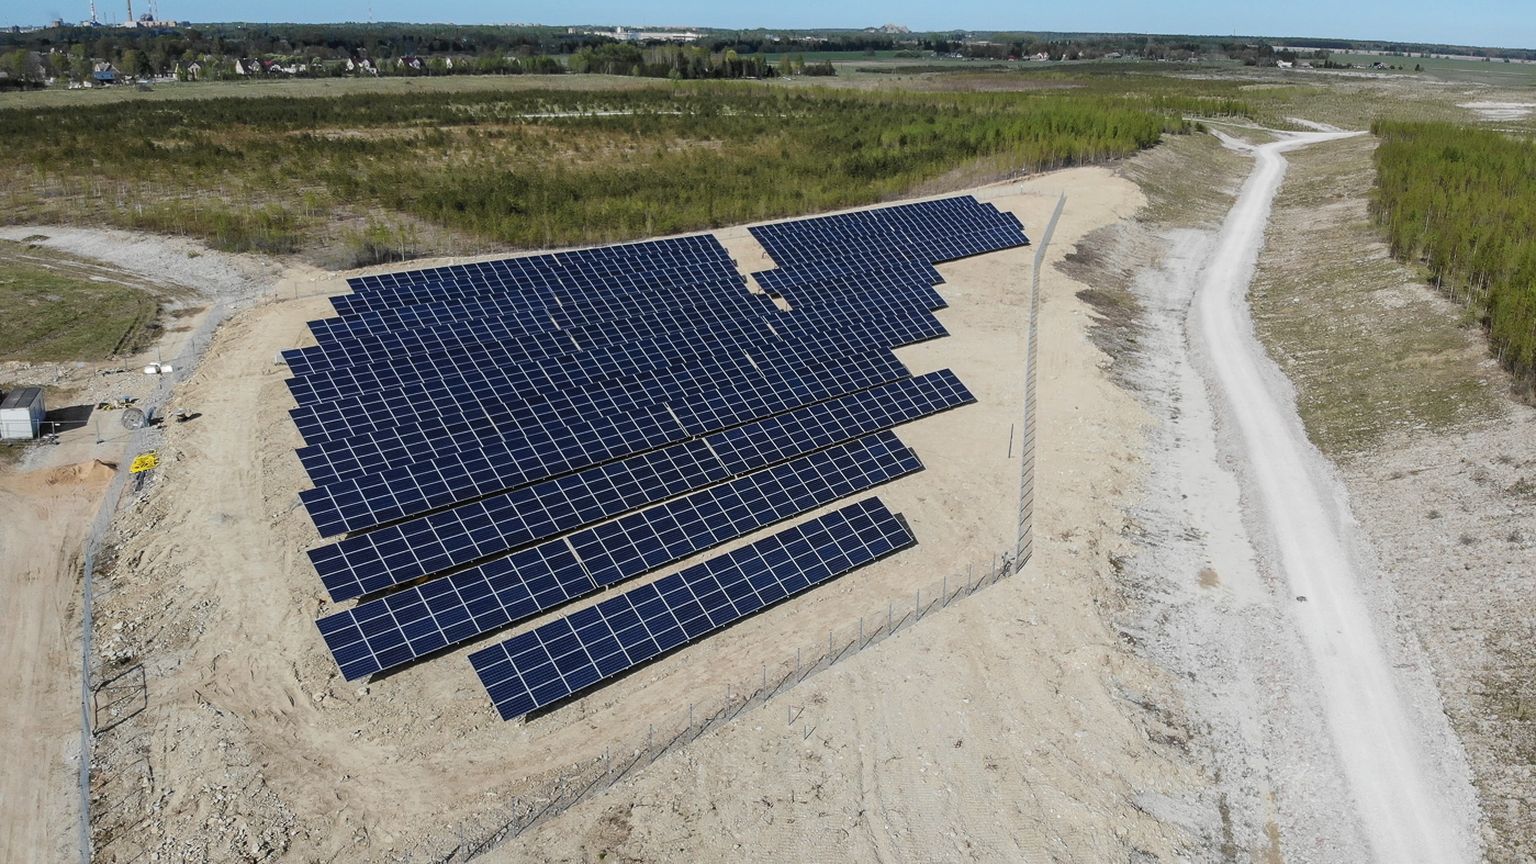 Один из первых солнечных парков "Eesti Energia" в Ида-Вирумаа был построен весной 2019 года в Лаазиквере вблизи Кохтла-Нымме, на месте, где раньше располагался сланцевый разрез.